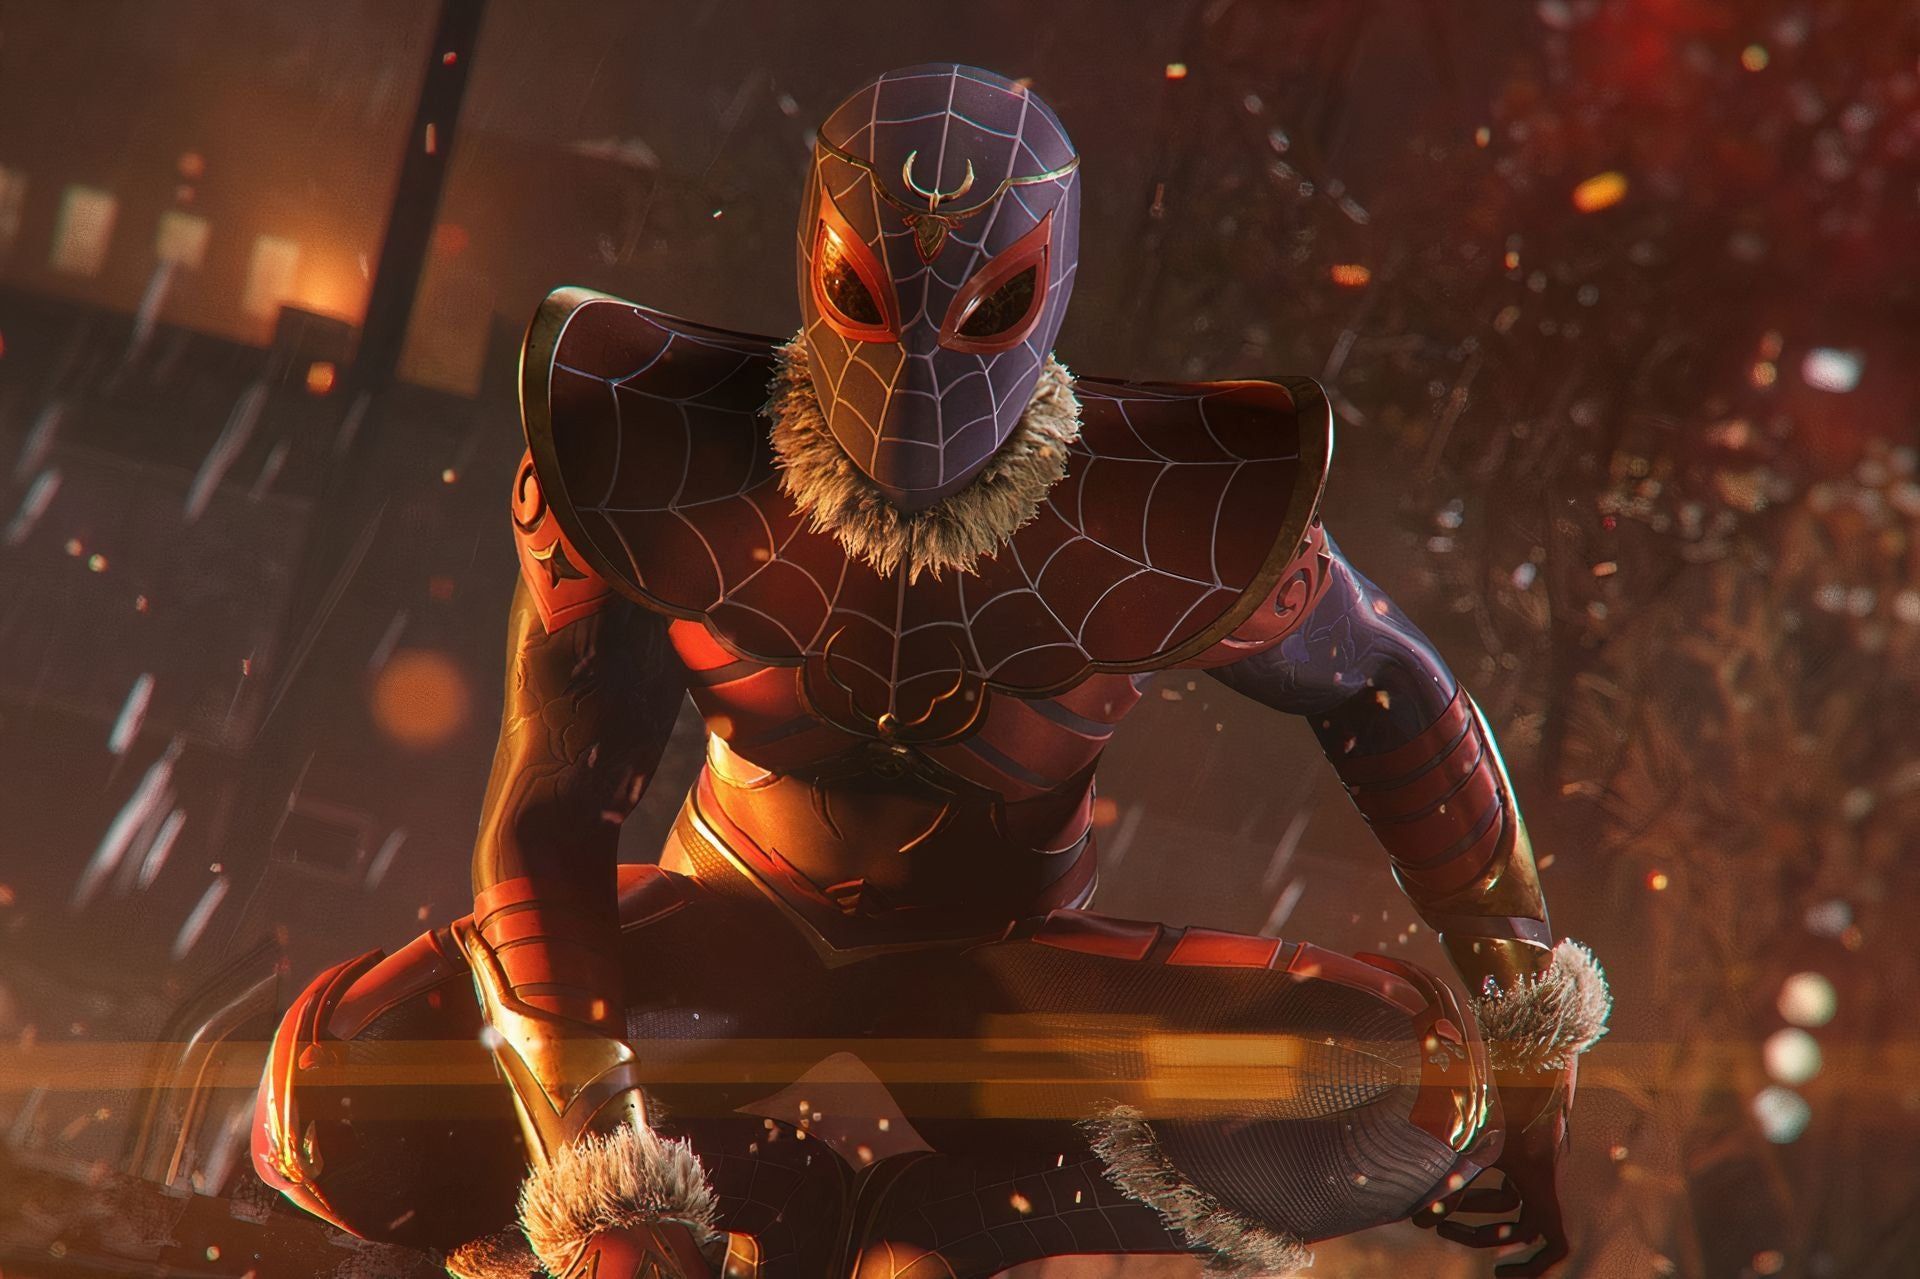 Marvel's Spider-Man: Turf Wars Trophy Guide